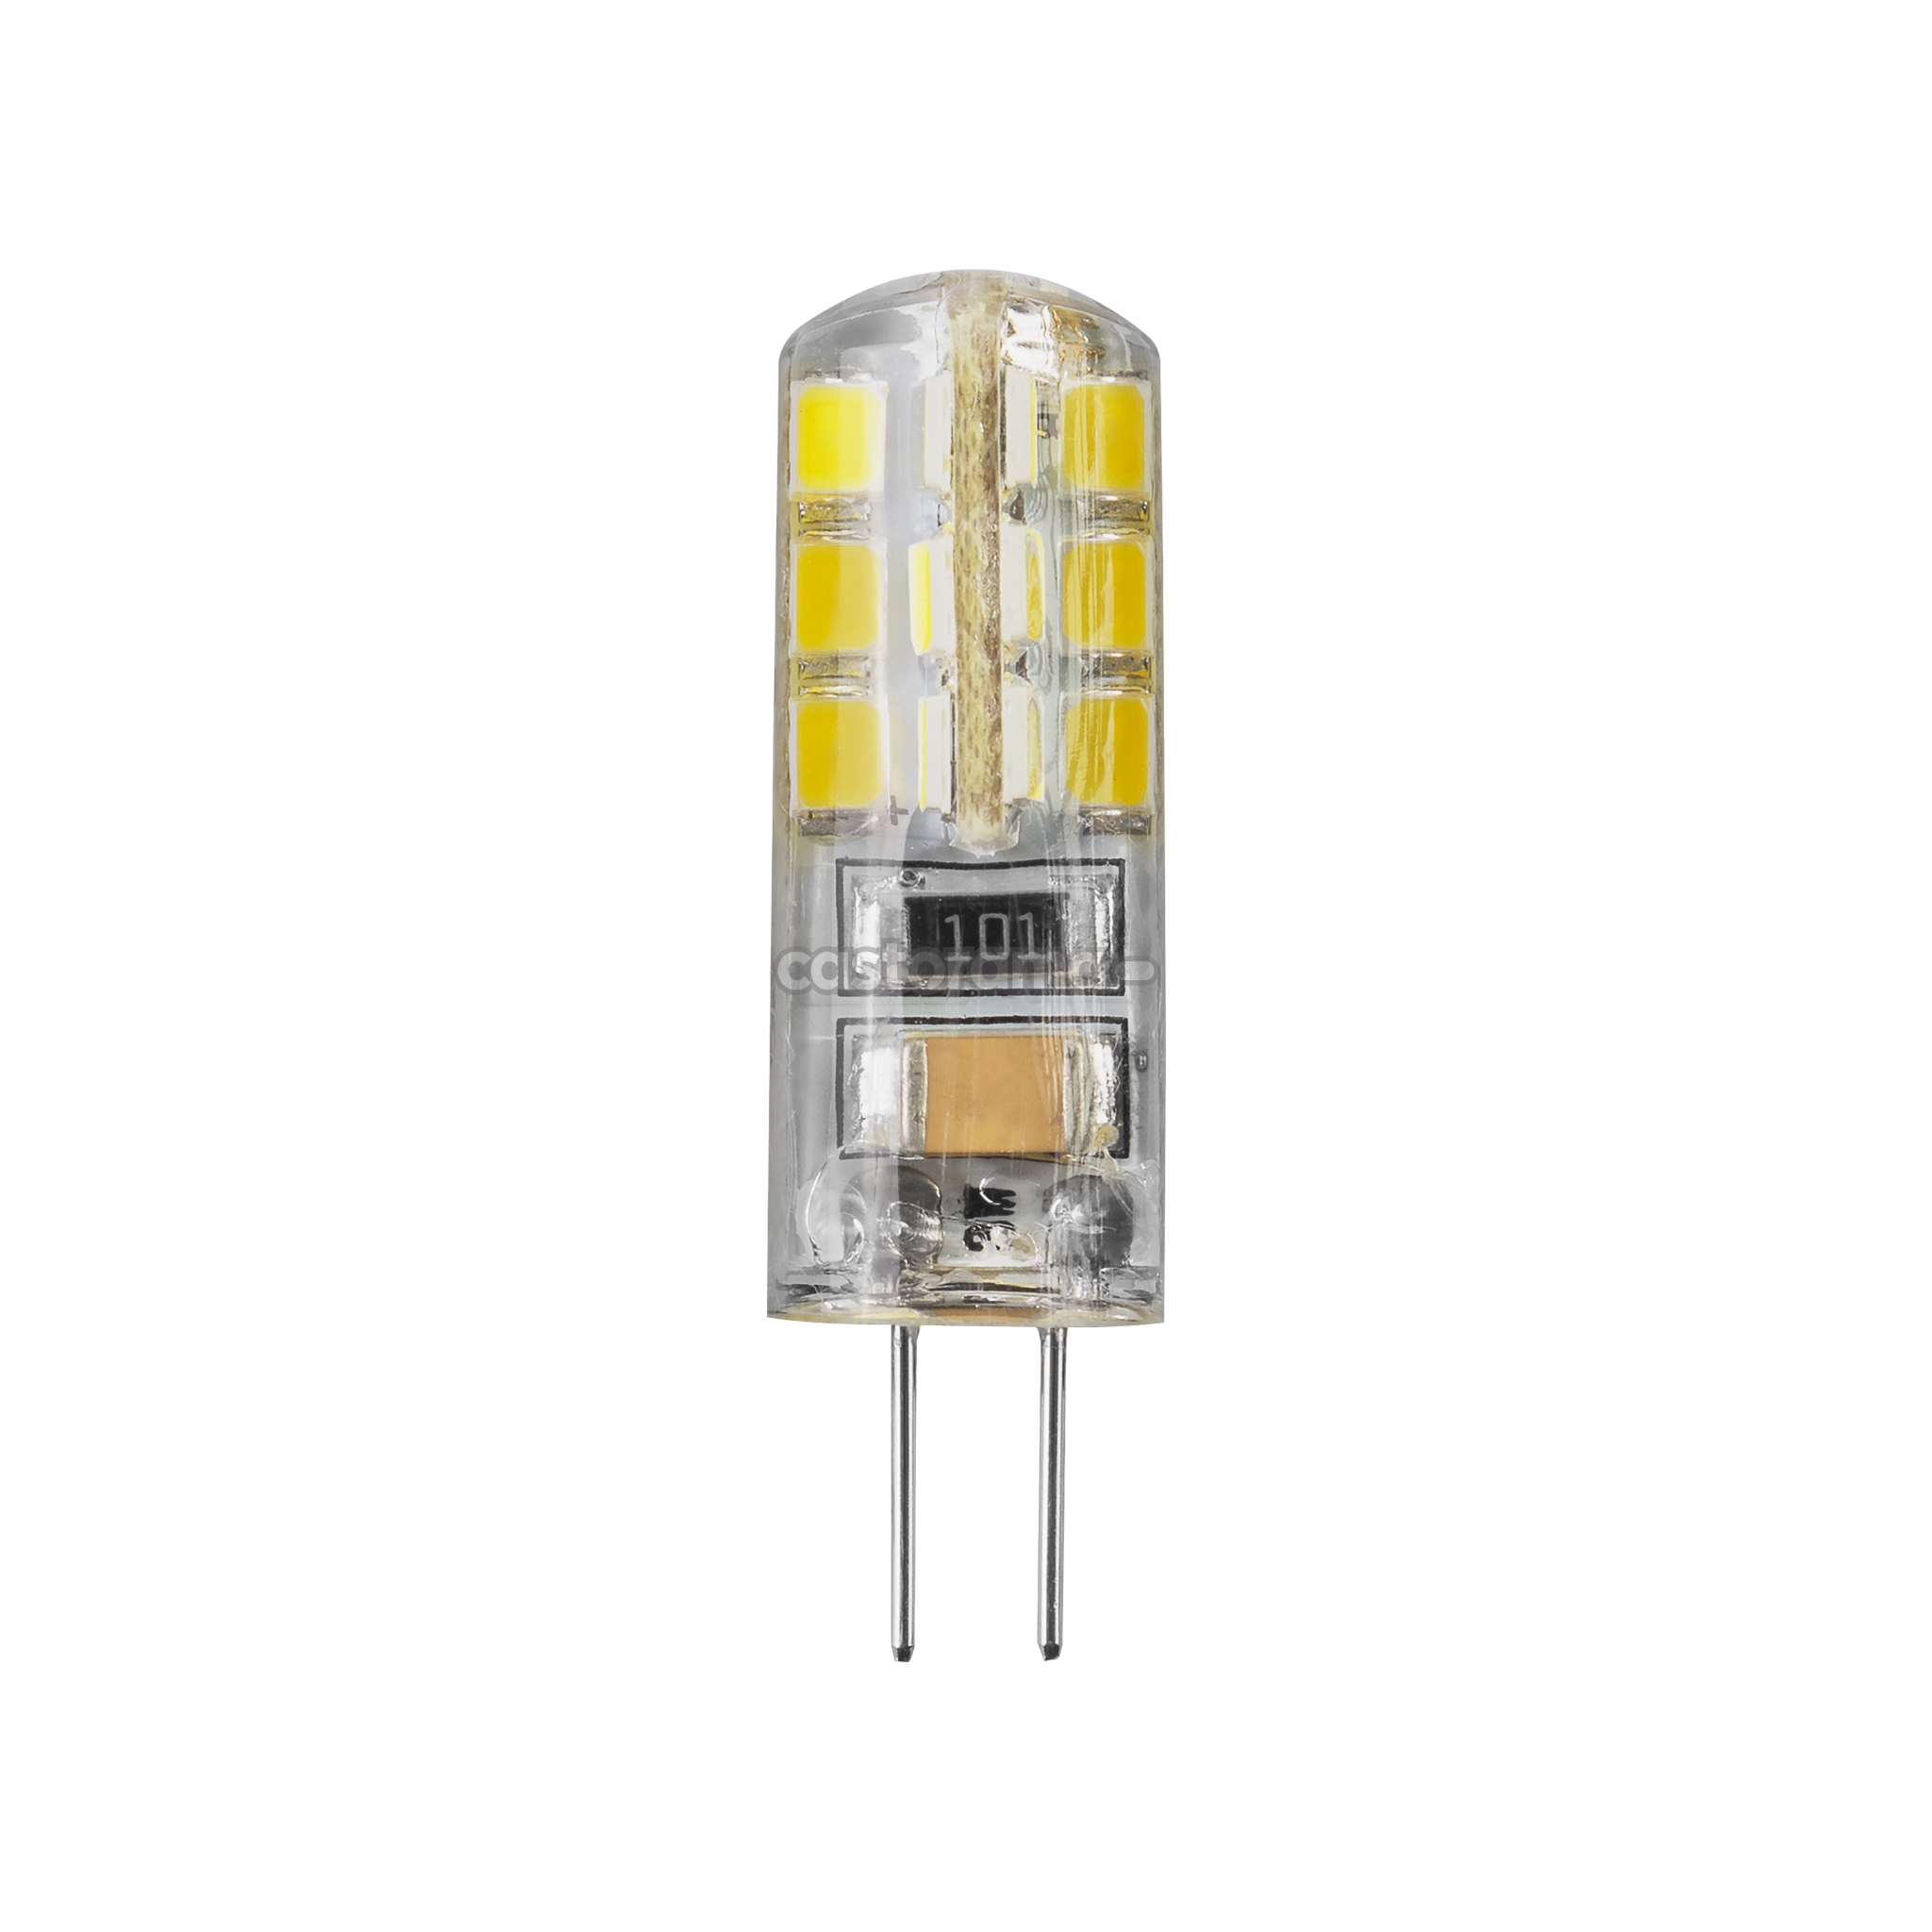 Купить лампочки светодиодные g4. G4 led 5w 220v 4200k. Лампа led-g4 5w 220v 4200k. Лампа светодиодная Navigator g4. Лампа светодиодная Ecola g4rv15elc, g4, Corn, 1.5Вт.